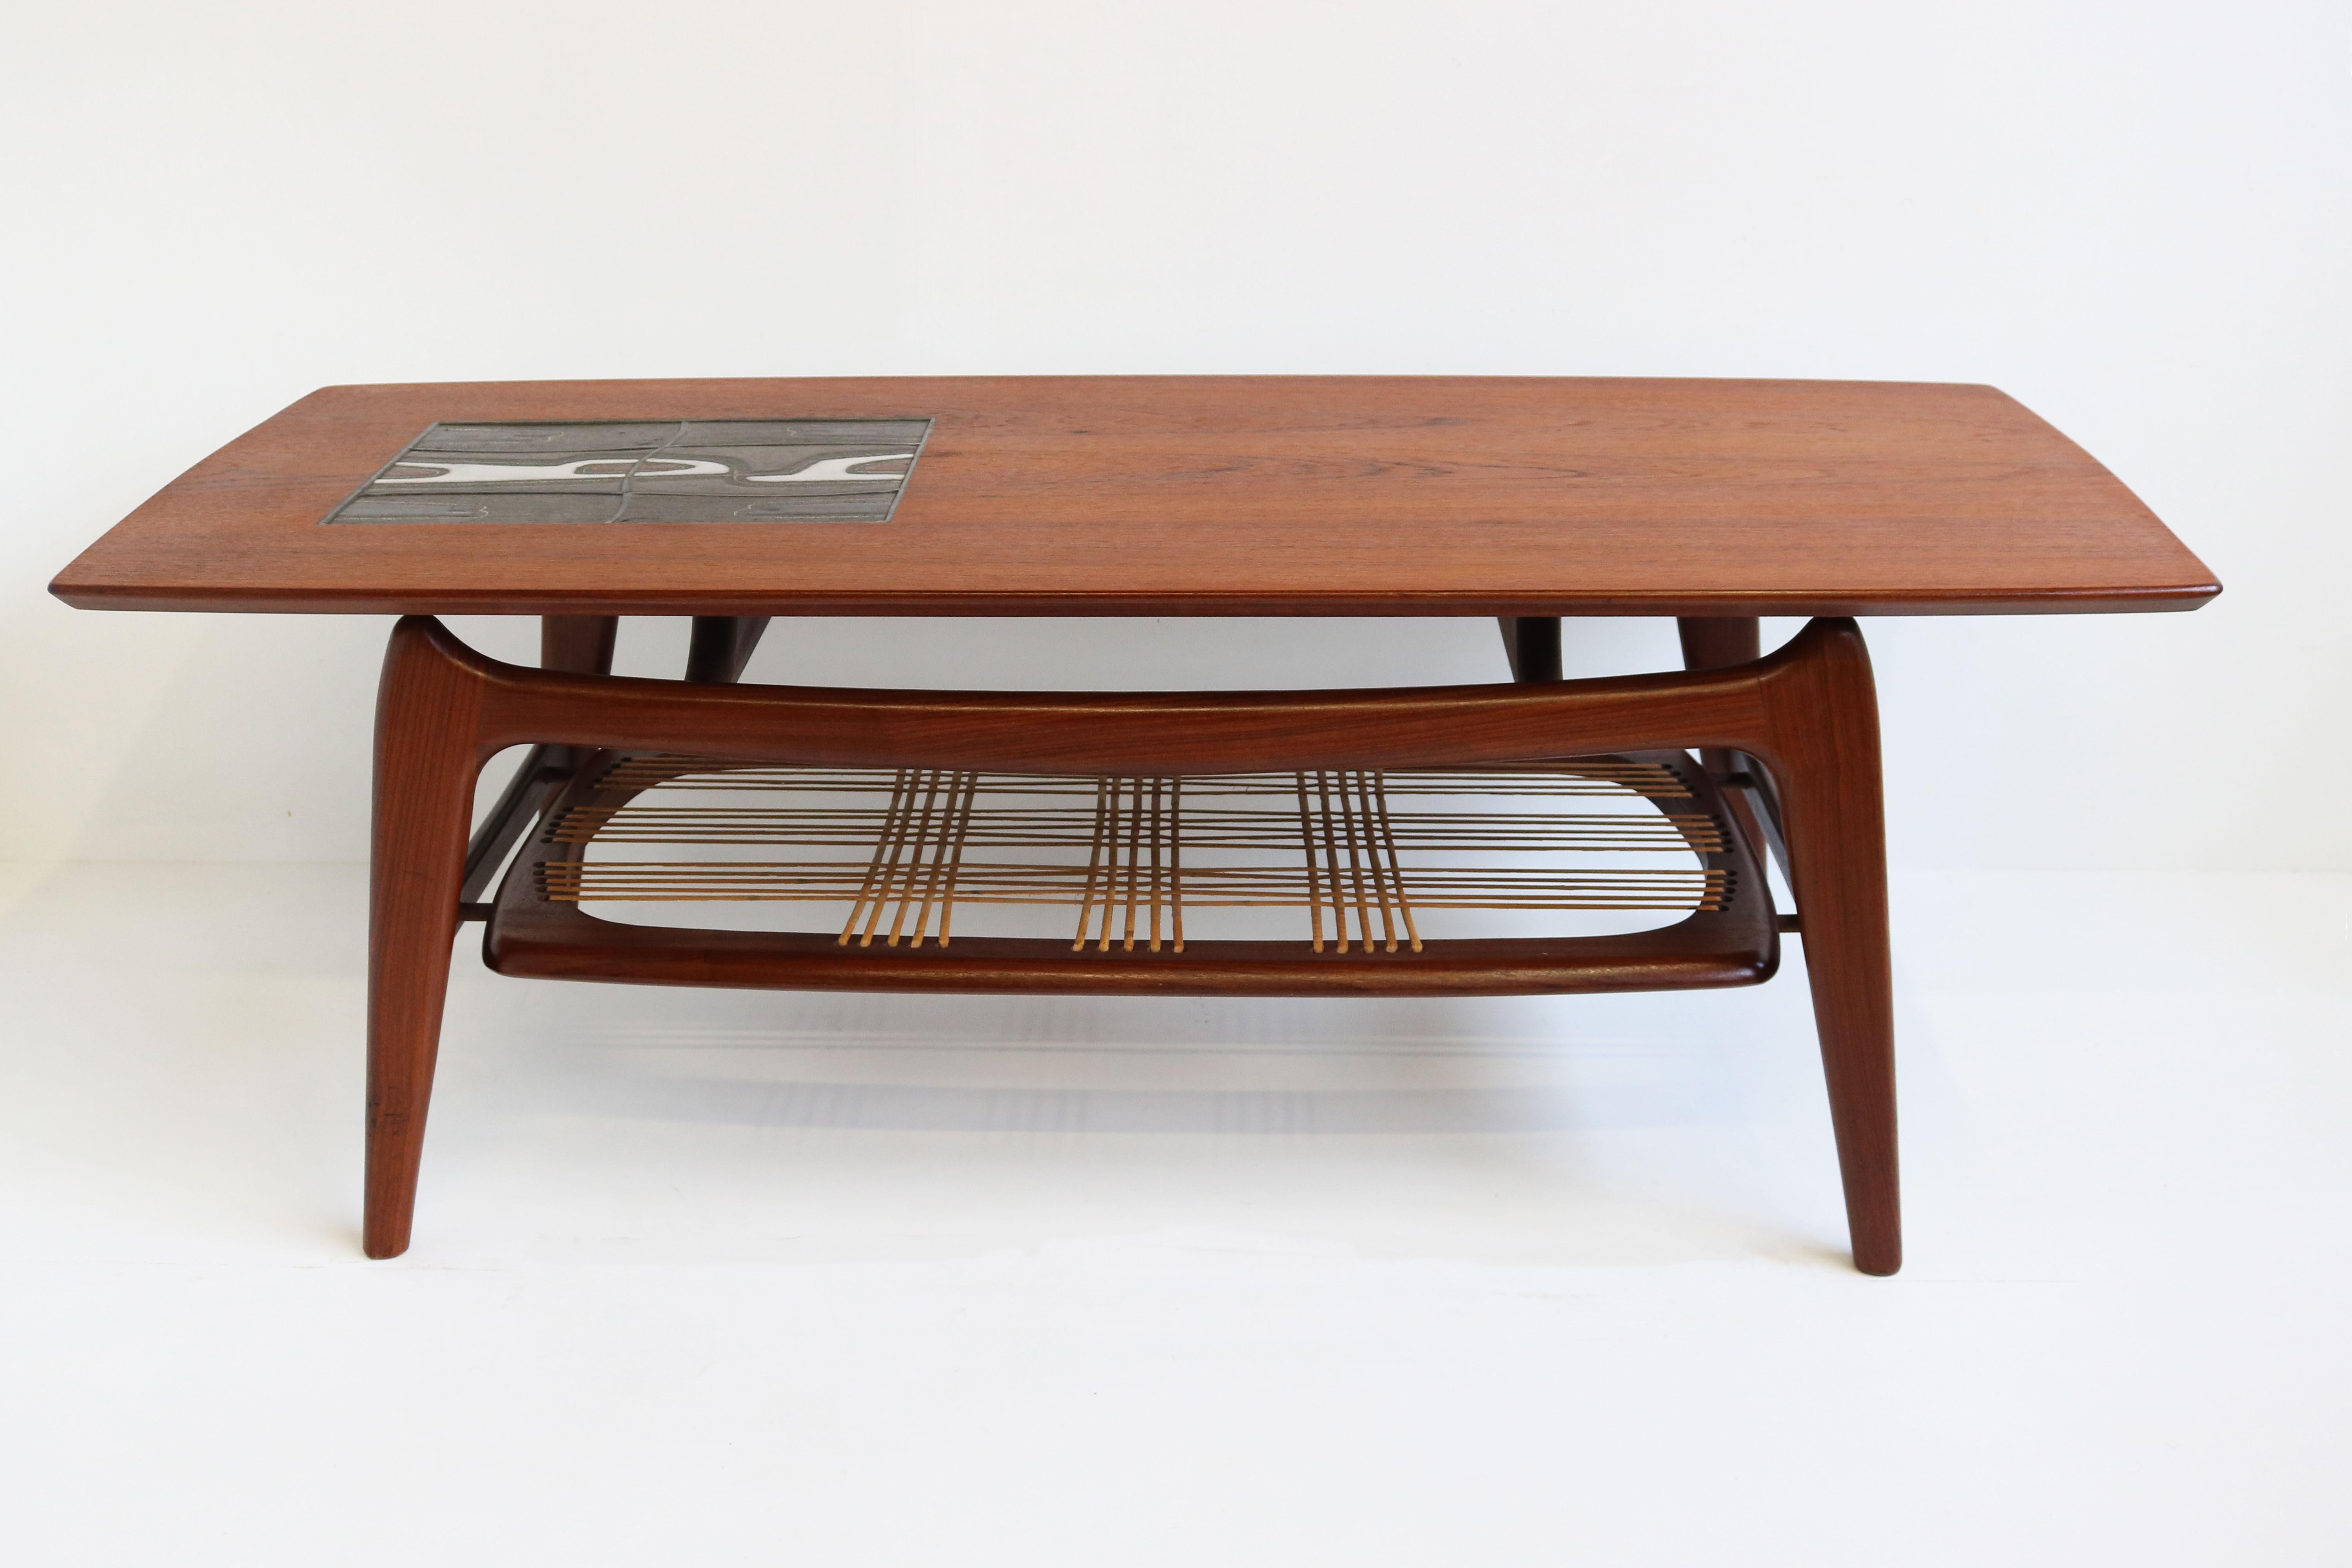 Vintage Design Coffee Table by Louis Van Teeffelen for Webe 1950 Teak Ceramic 4